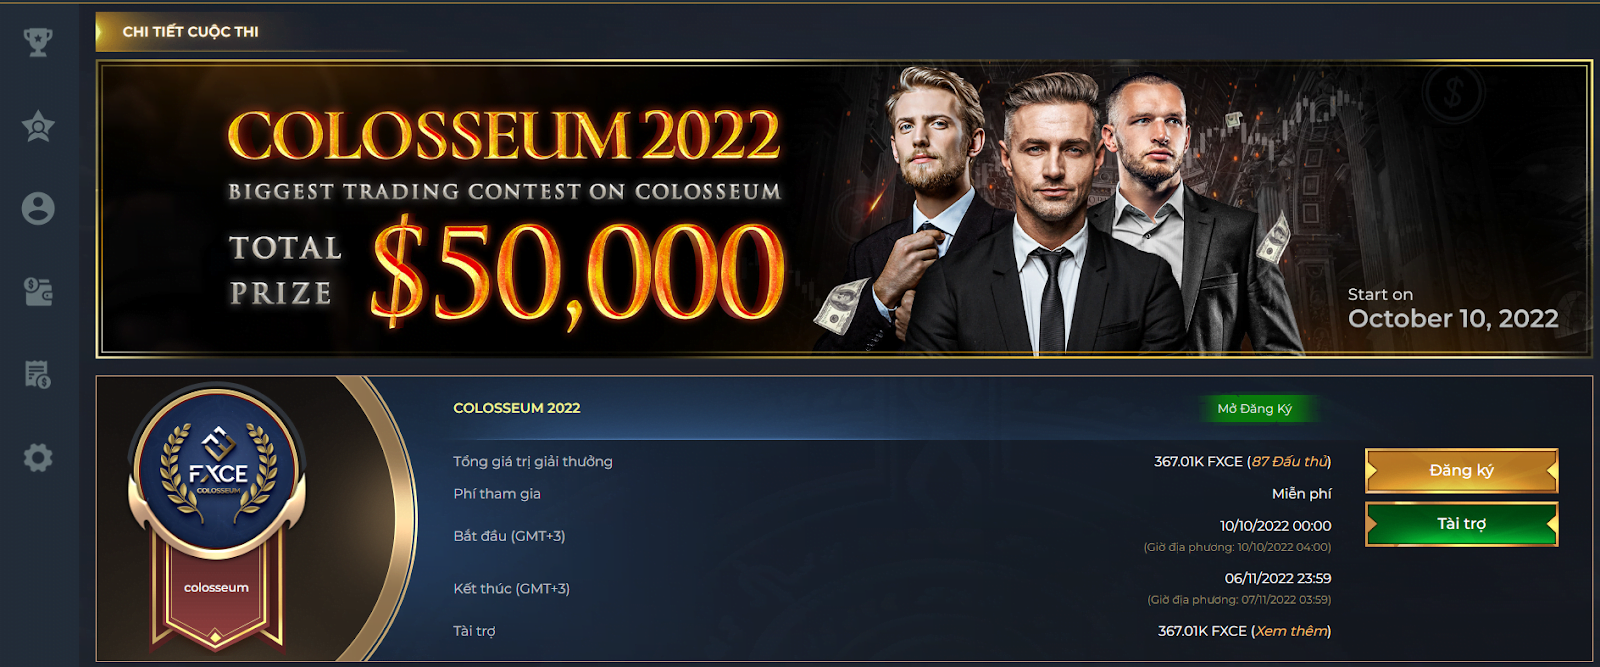 Đăng ký tham gia cuộc thi Colosseum 2022 